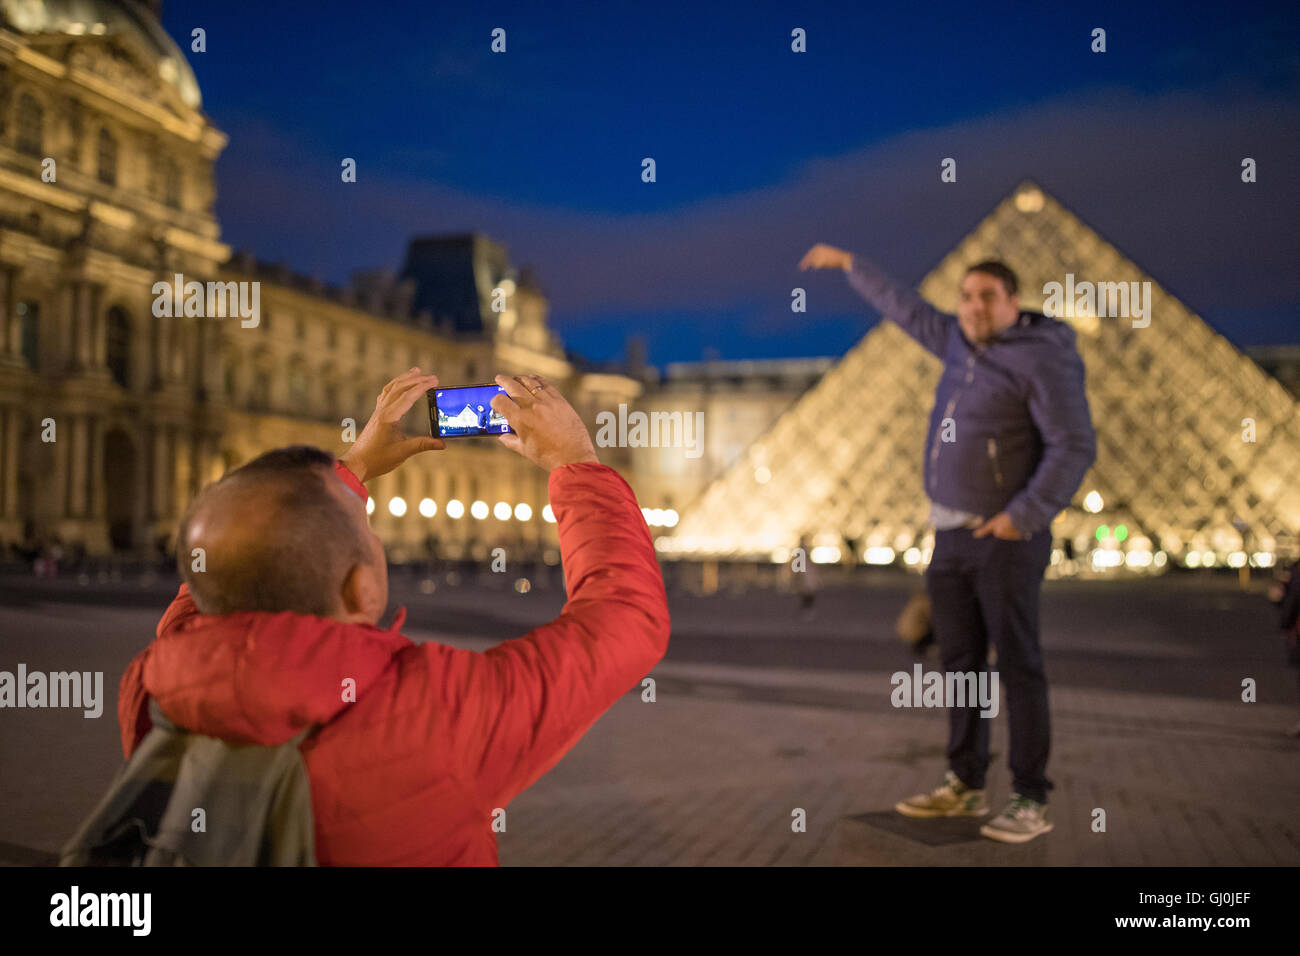 Les touristes de prendre des photos au palais du Louvre, au crépuscule, Paris, France Banque D'Images